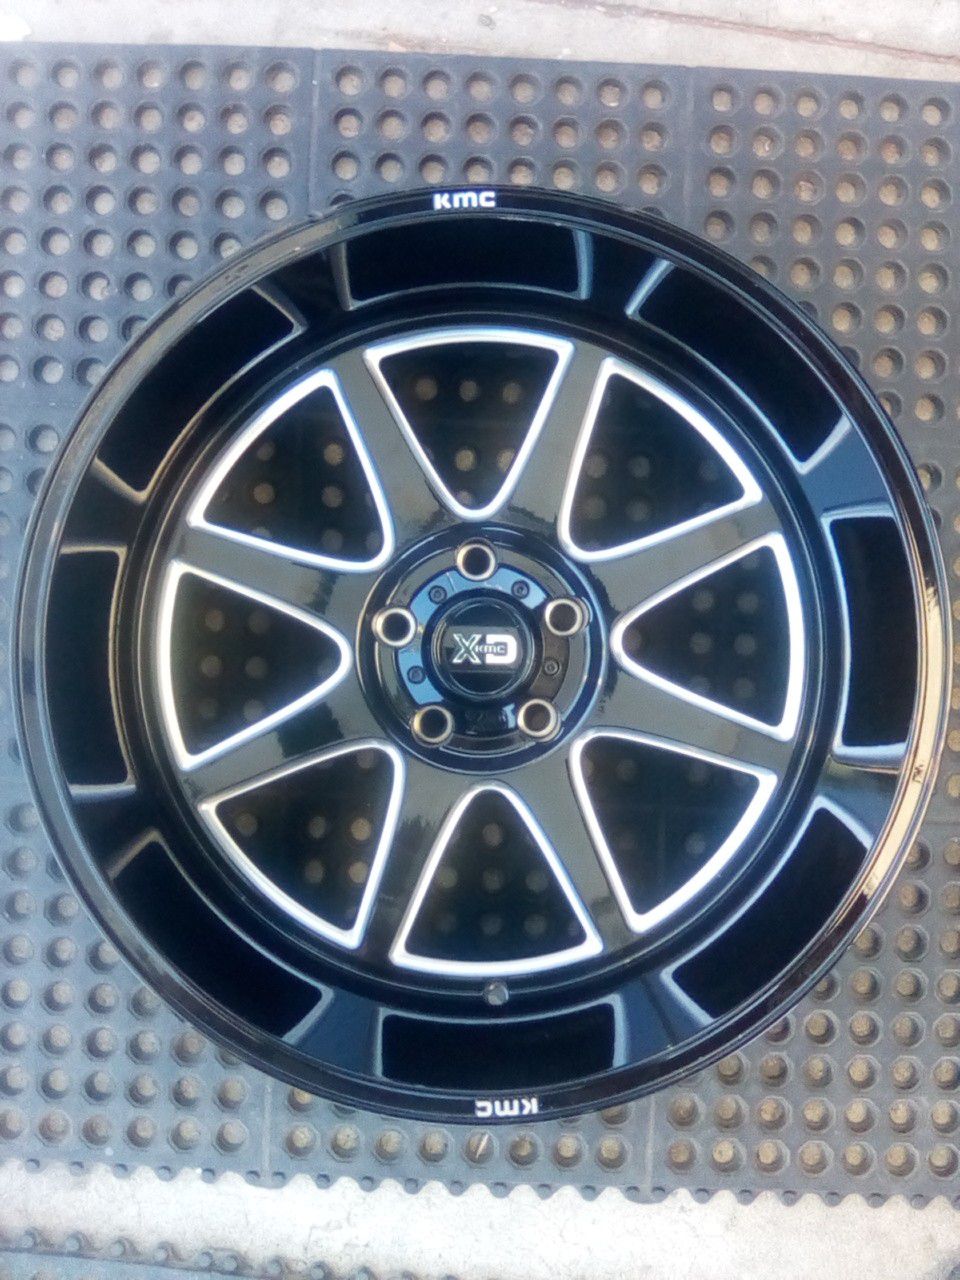 KMC XD 5 Lug Gloss Black 20" Wheel Rim